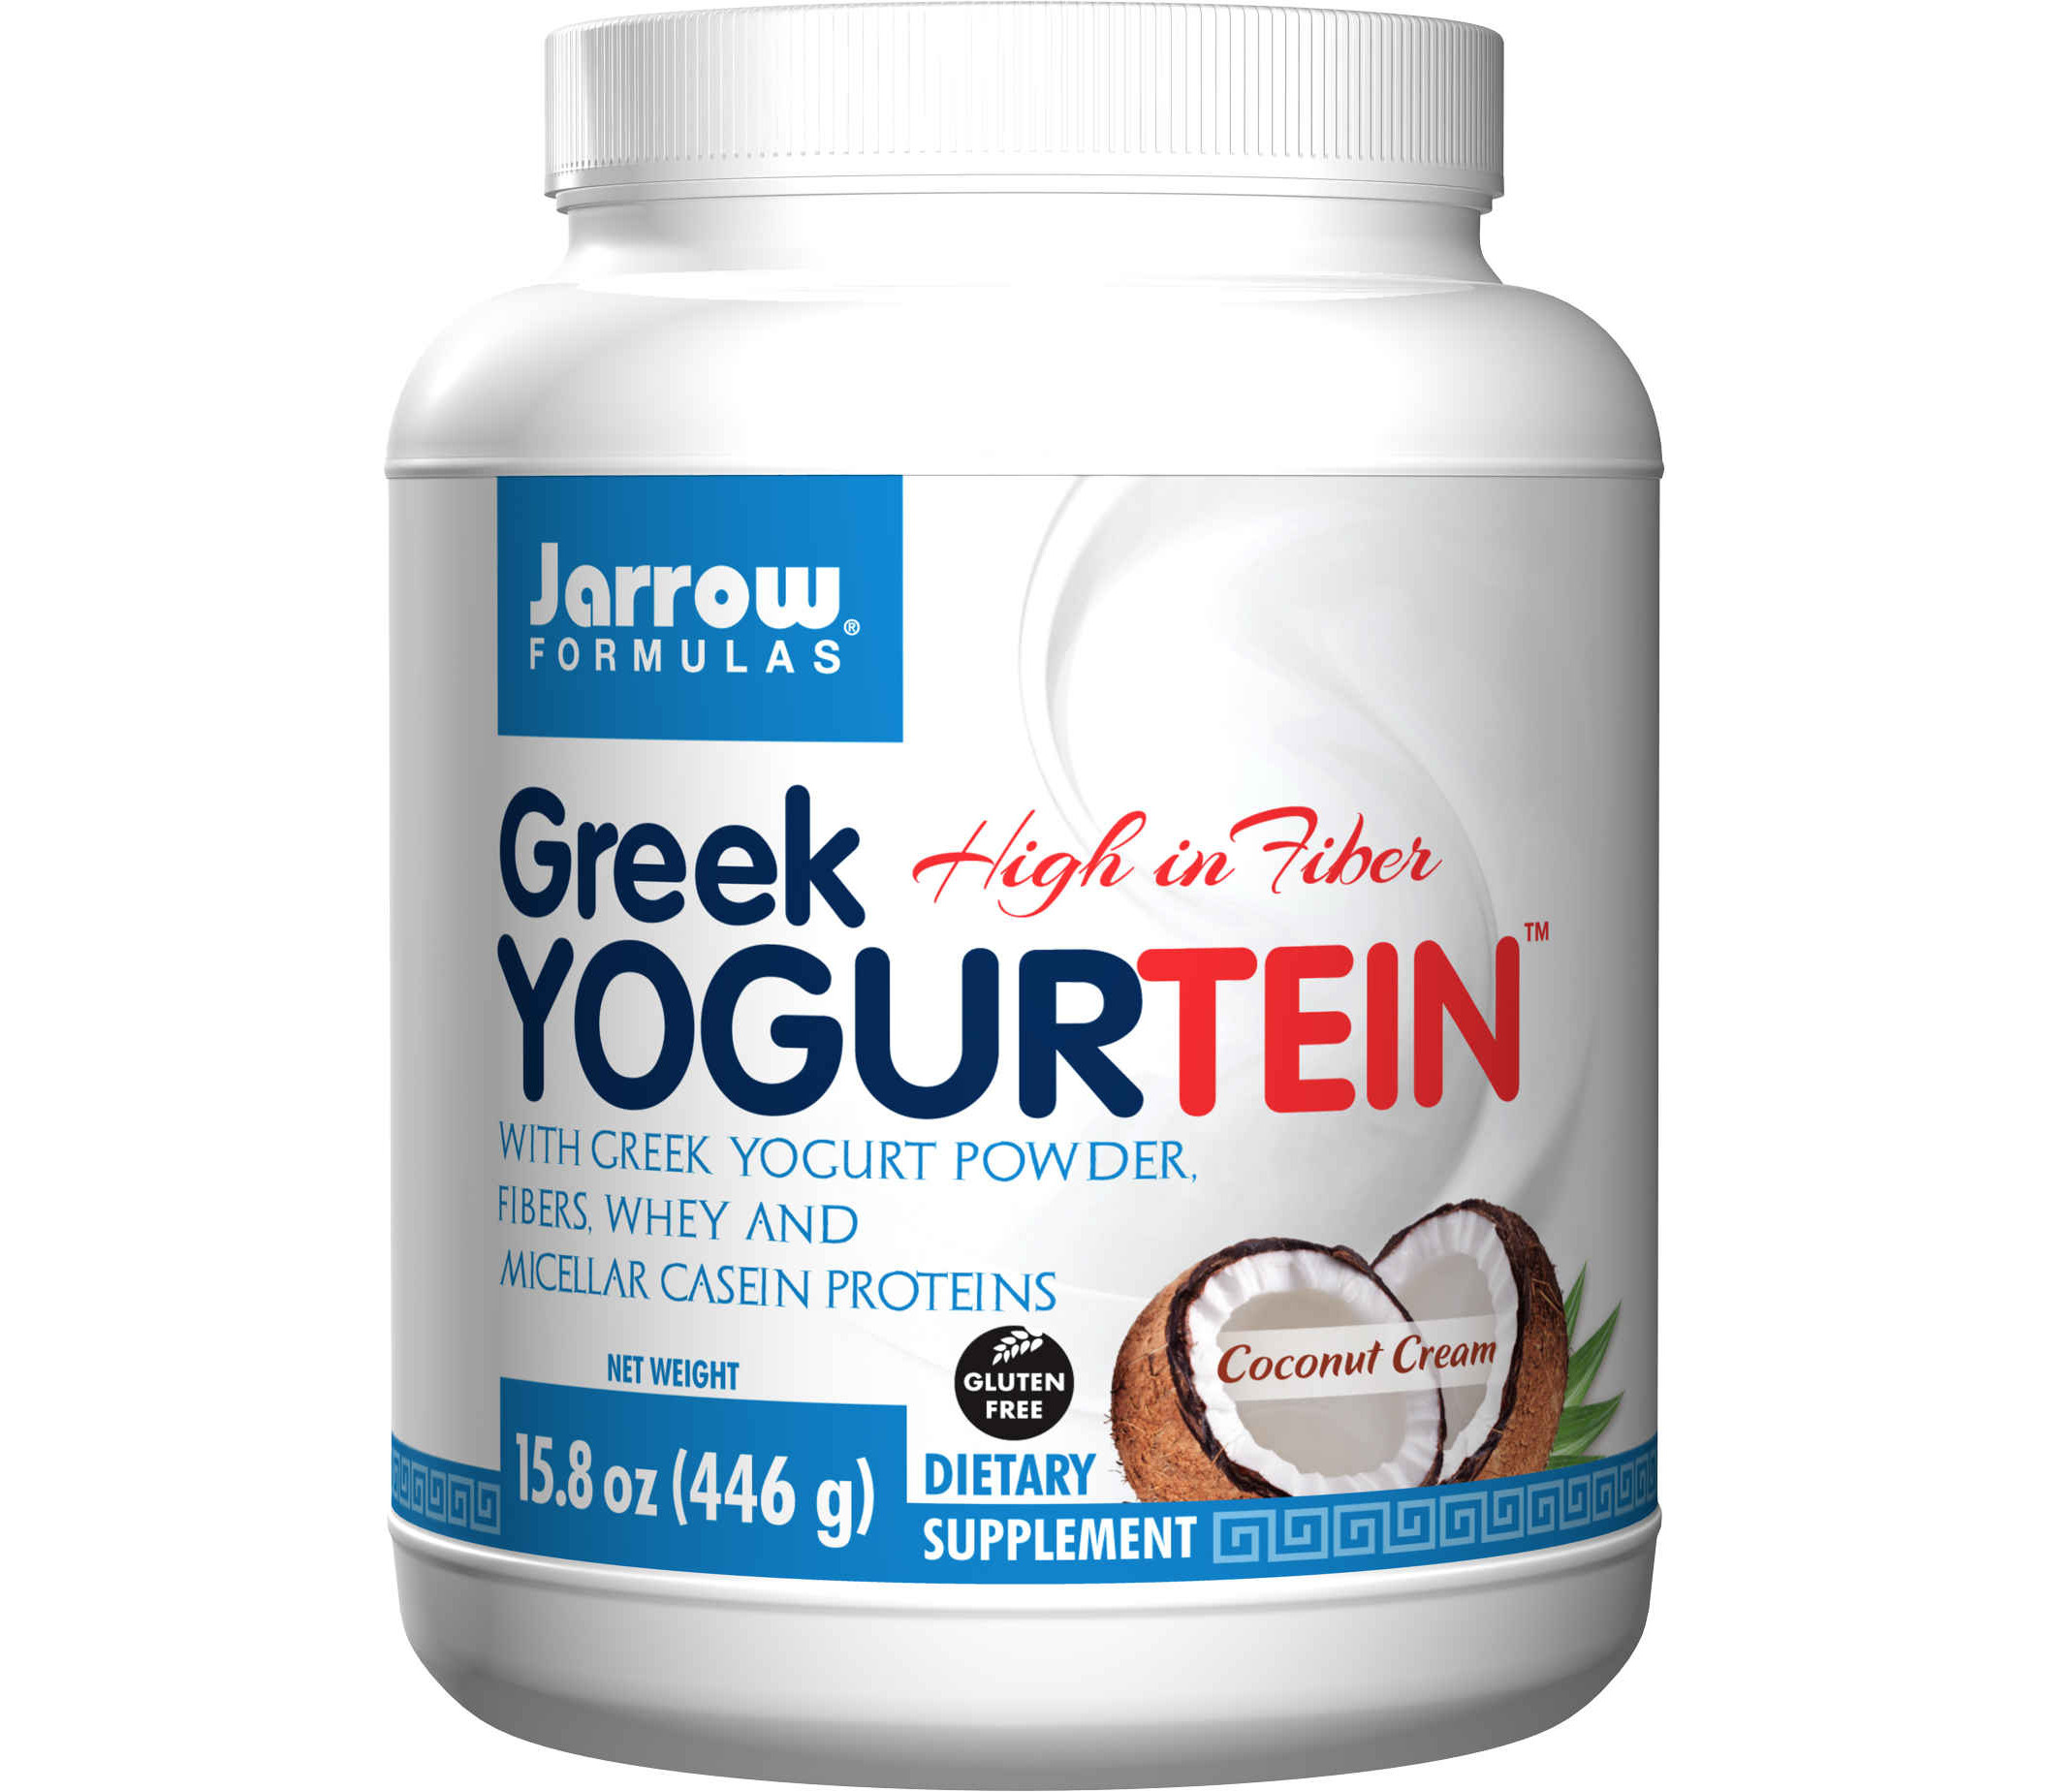 Greek Yoghurtein - Greek yogurt powder, fibers, whey and micellar casein - ...